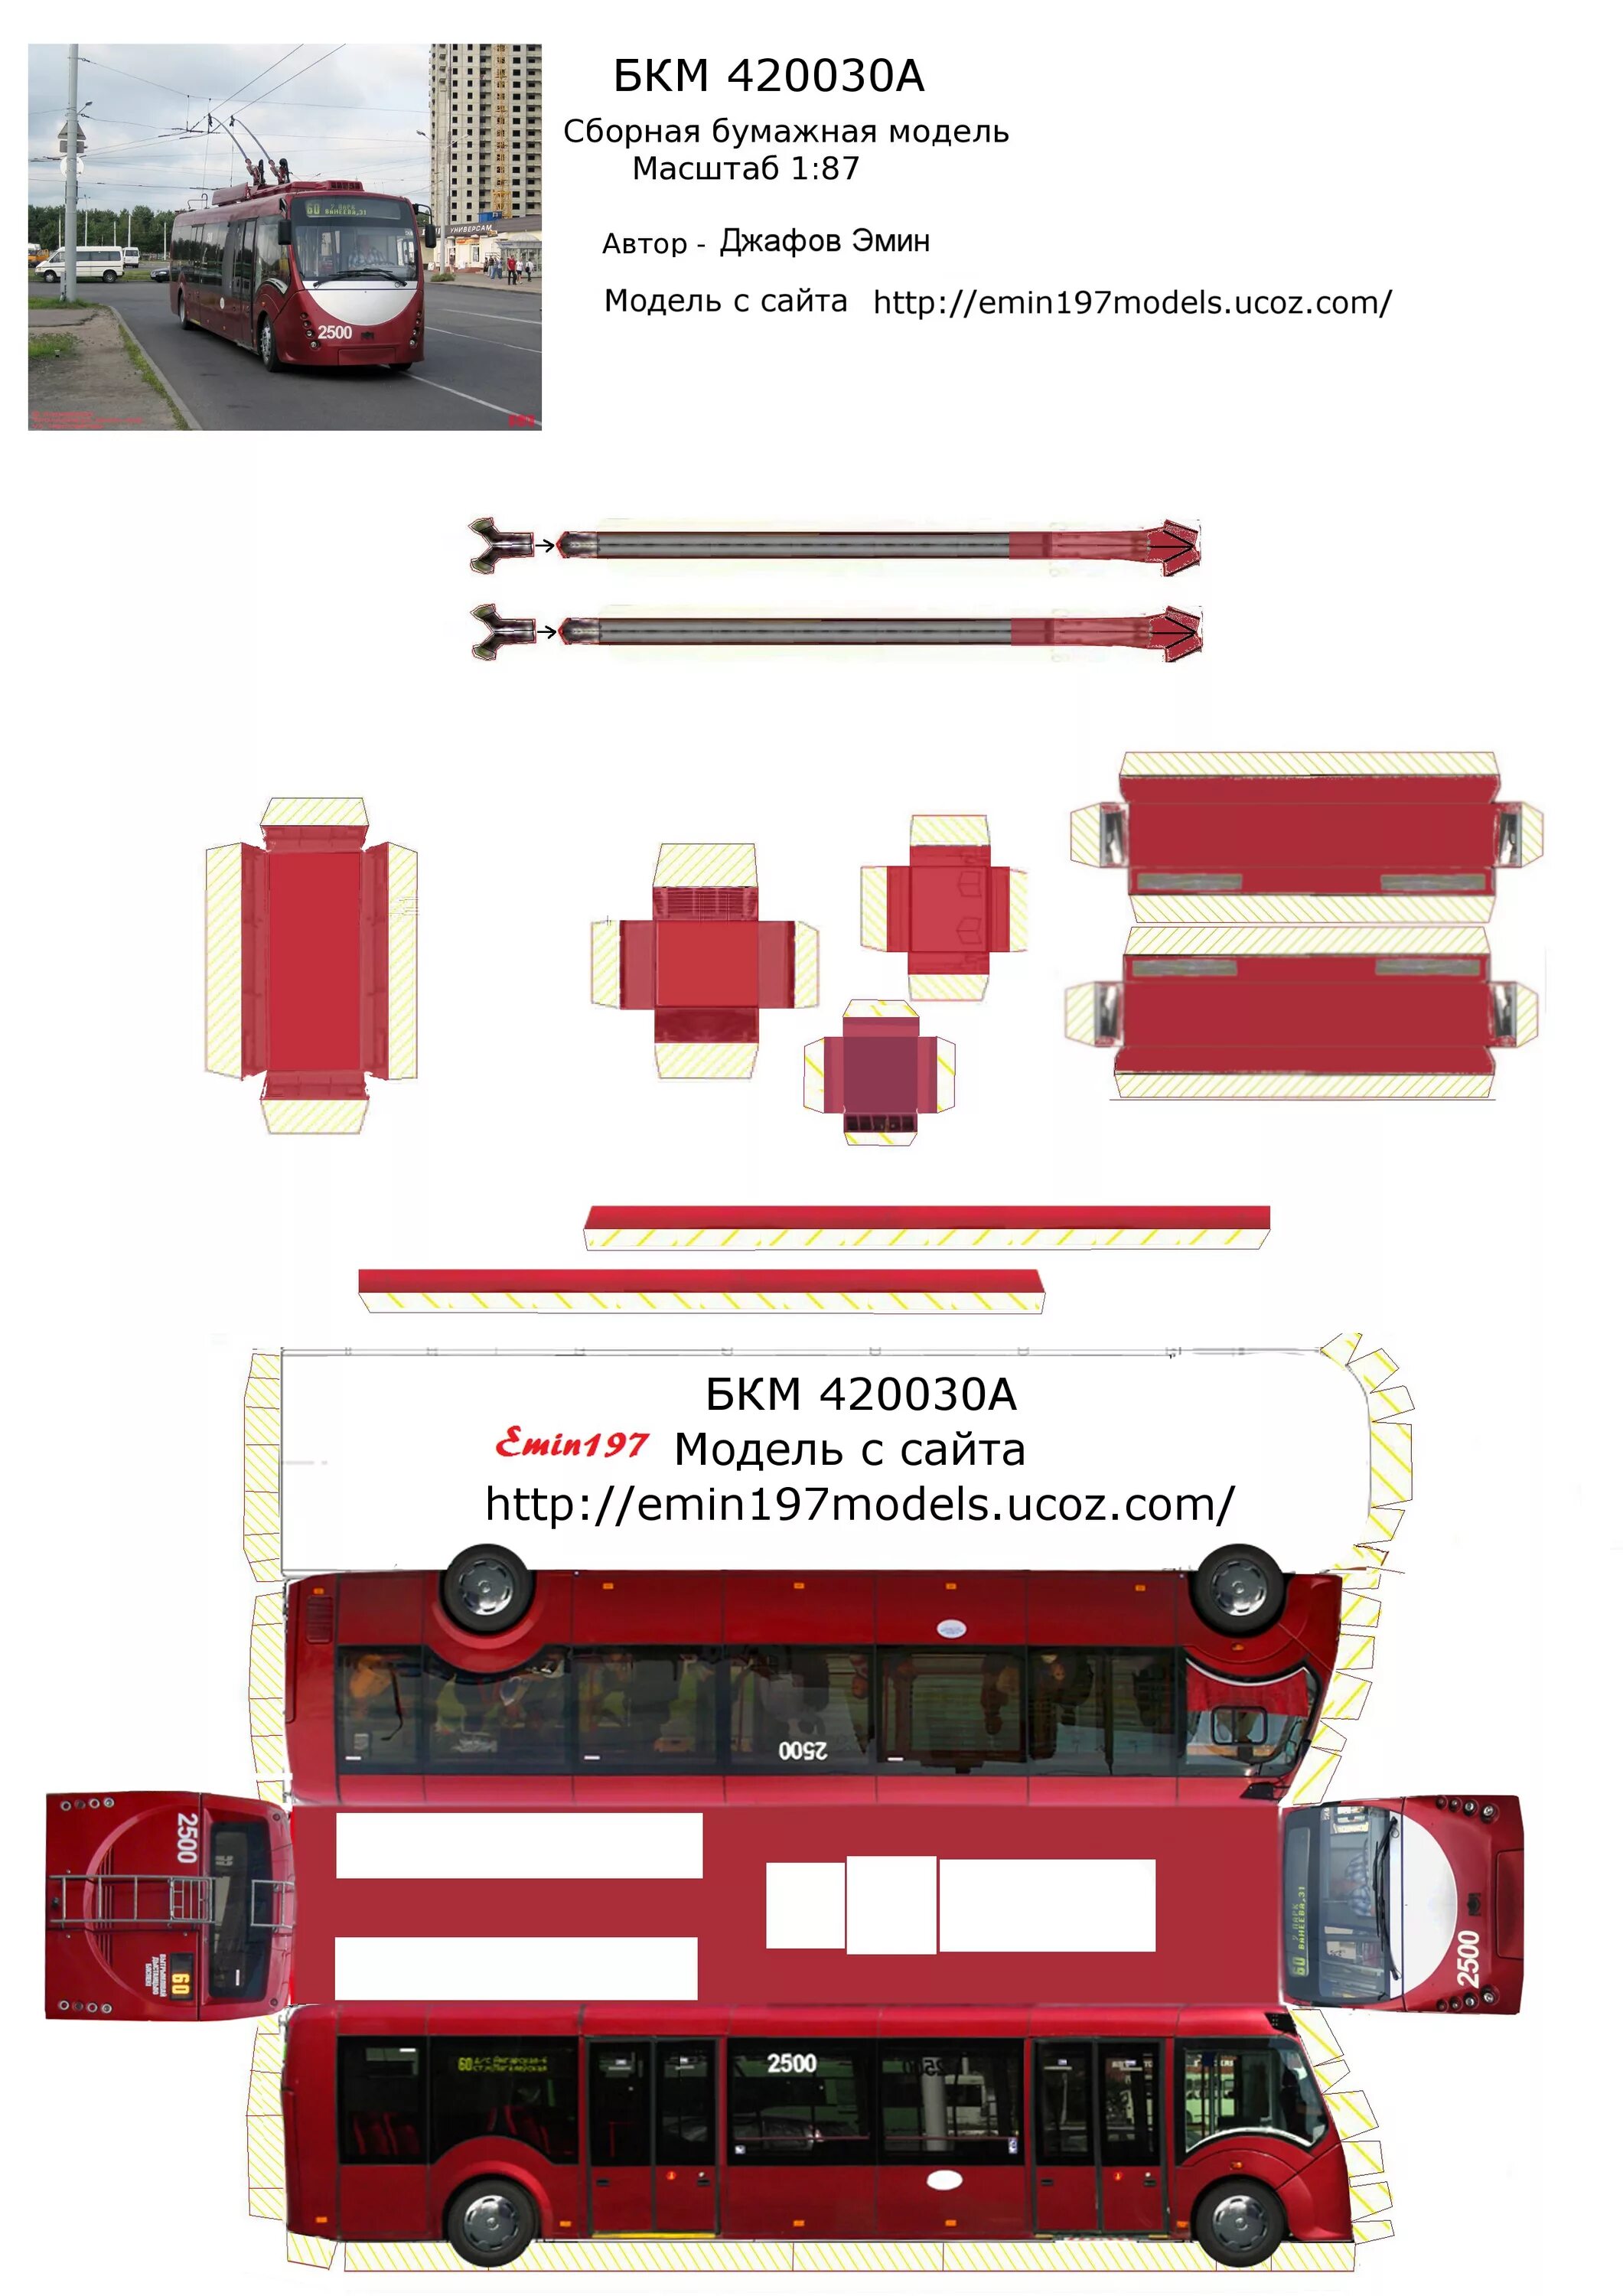 Бумажный троллейбус рф. Бумажная модель троллейбуса БКМ 321. БКМ 321 развёртка. Развертка троллейбуса. Развертка бумажный троллейбус.